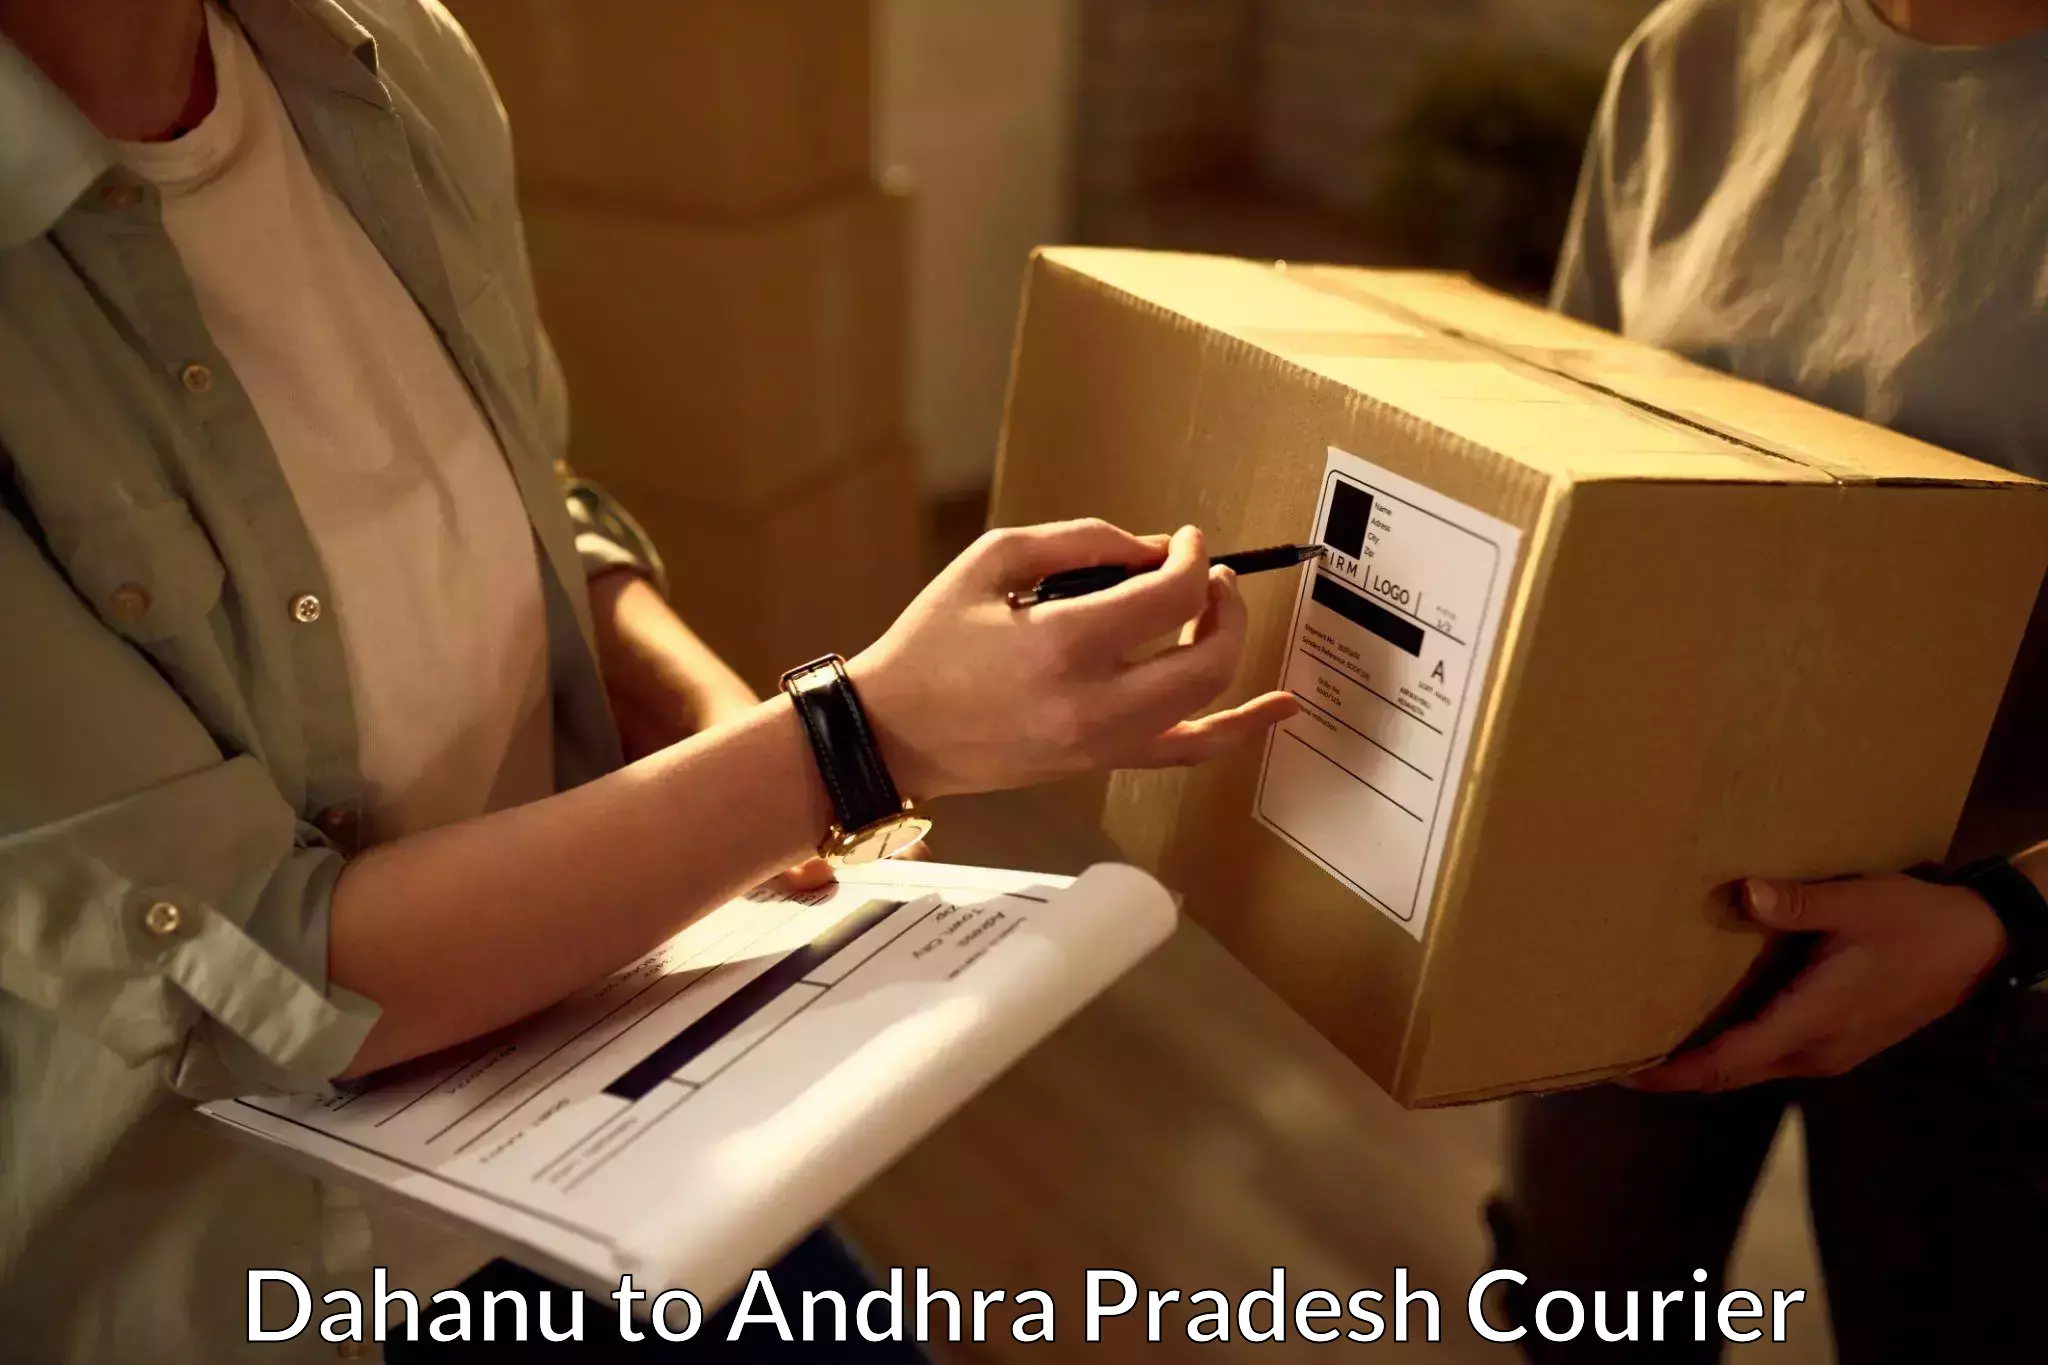 Reliable courier service Dahanu to Palamaner